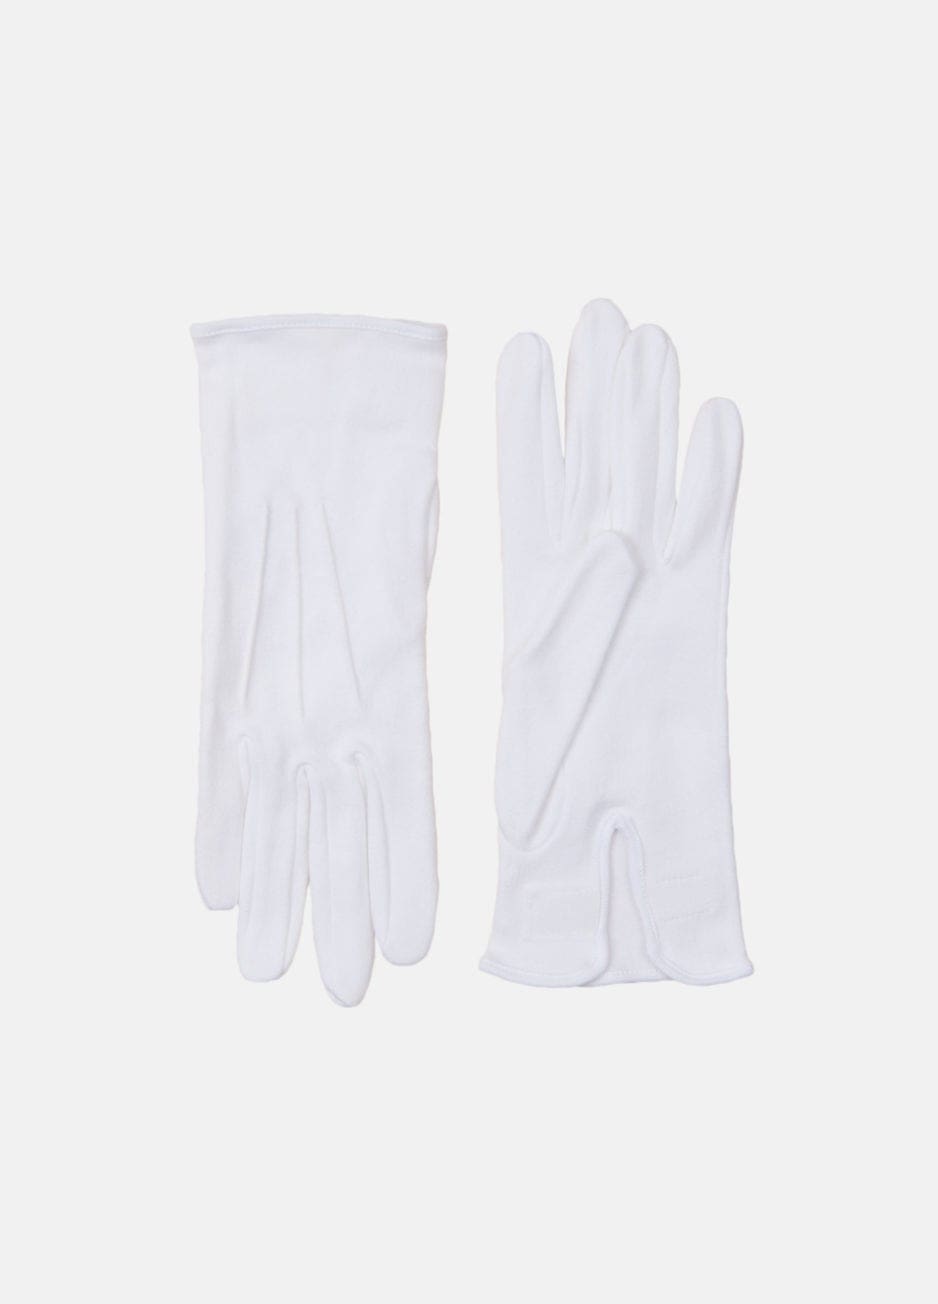 Hvide handsker fra Troelstrup